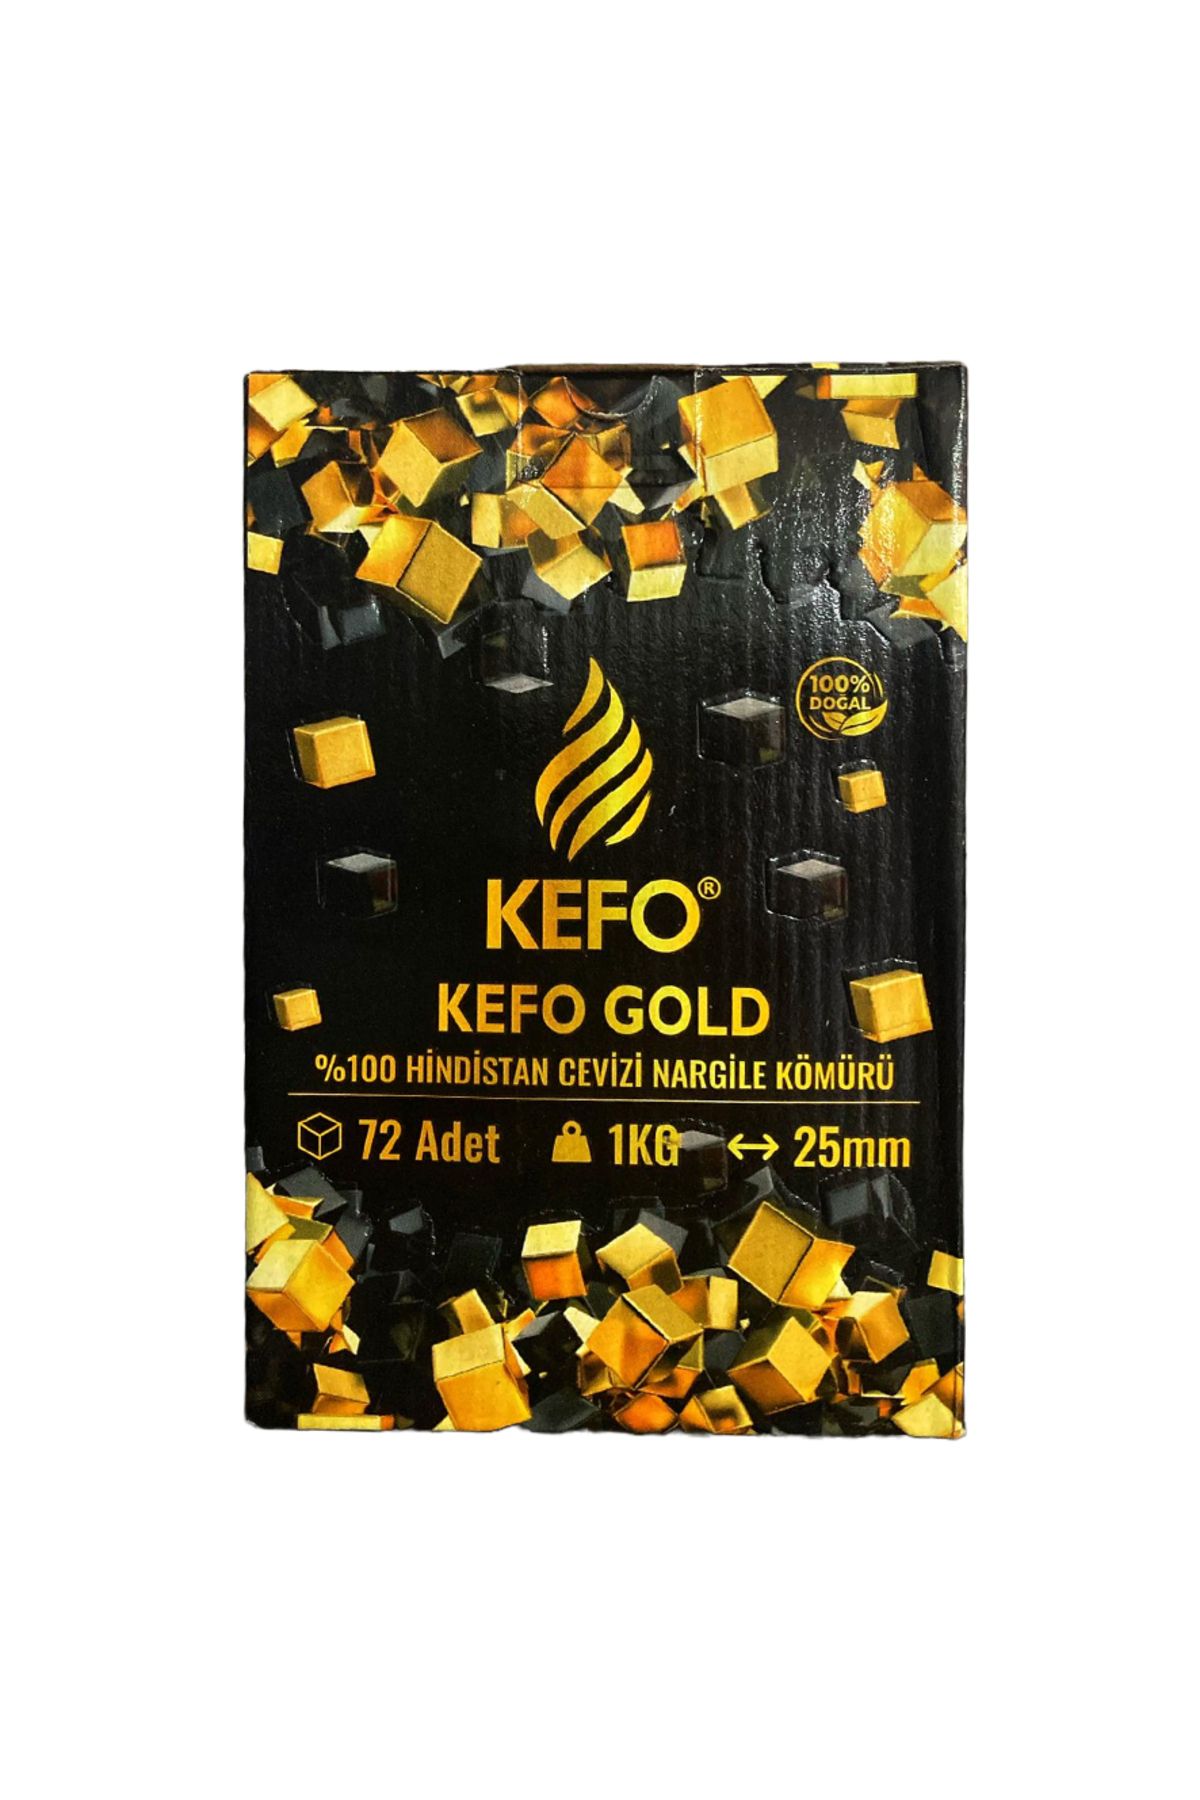 Kefo Gold Hindistan Cevizi Nargile Kömürü Standart 1kg